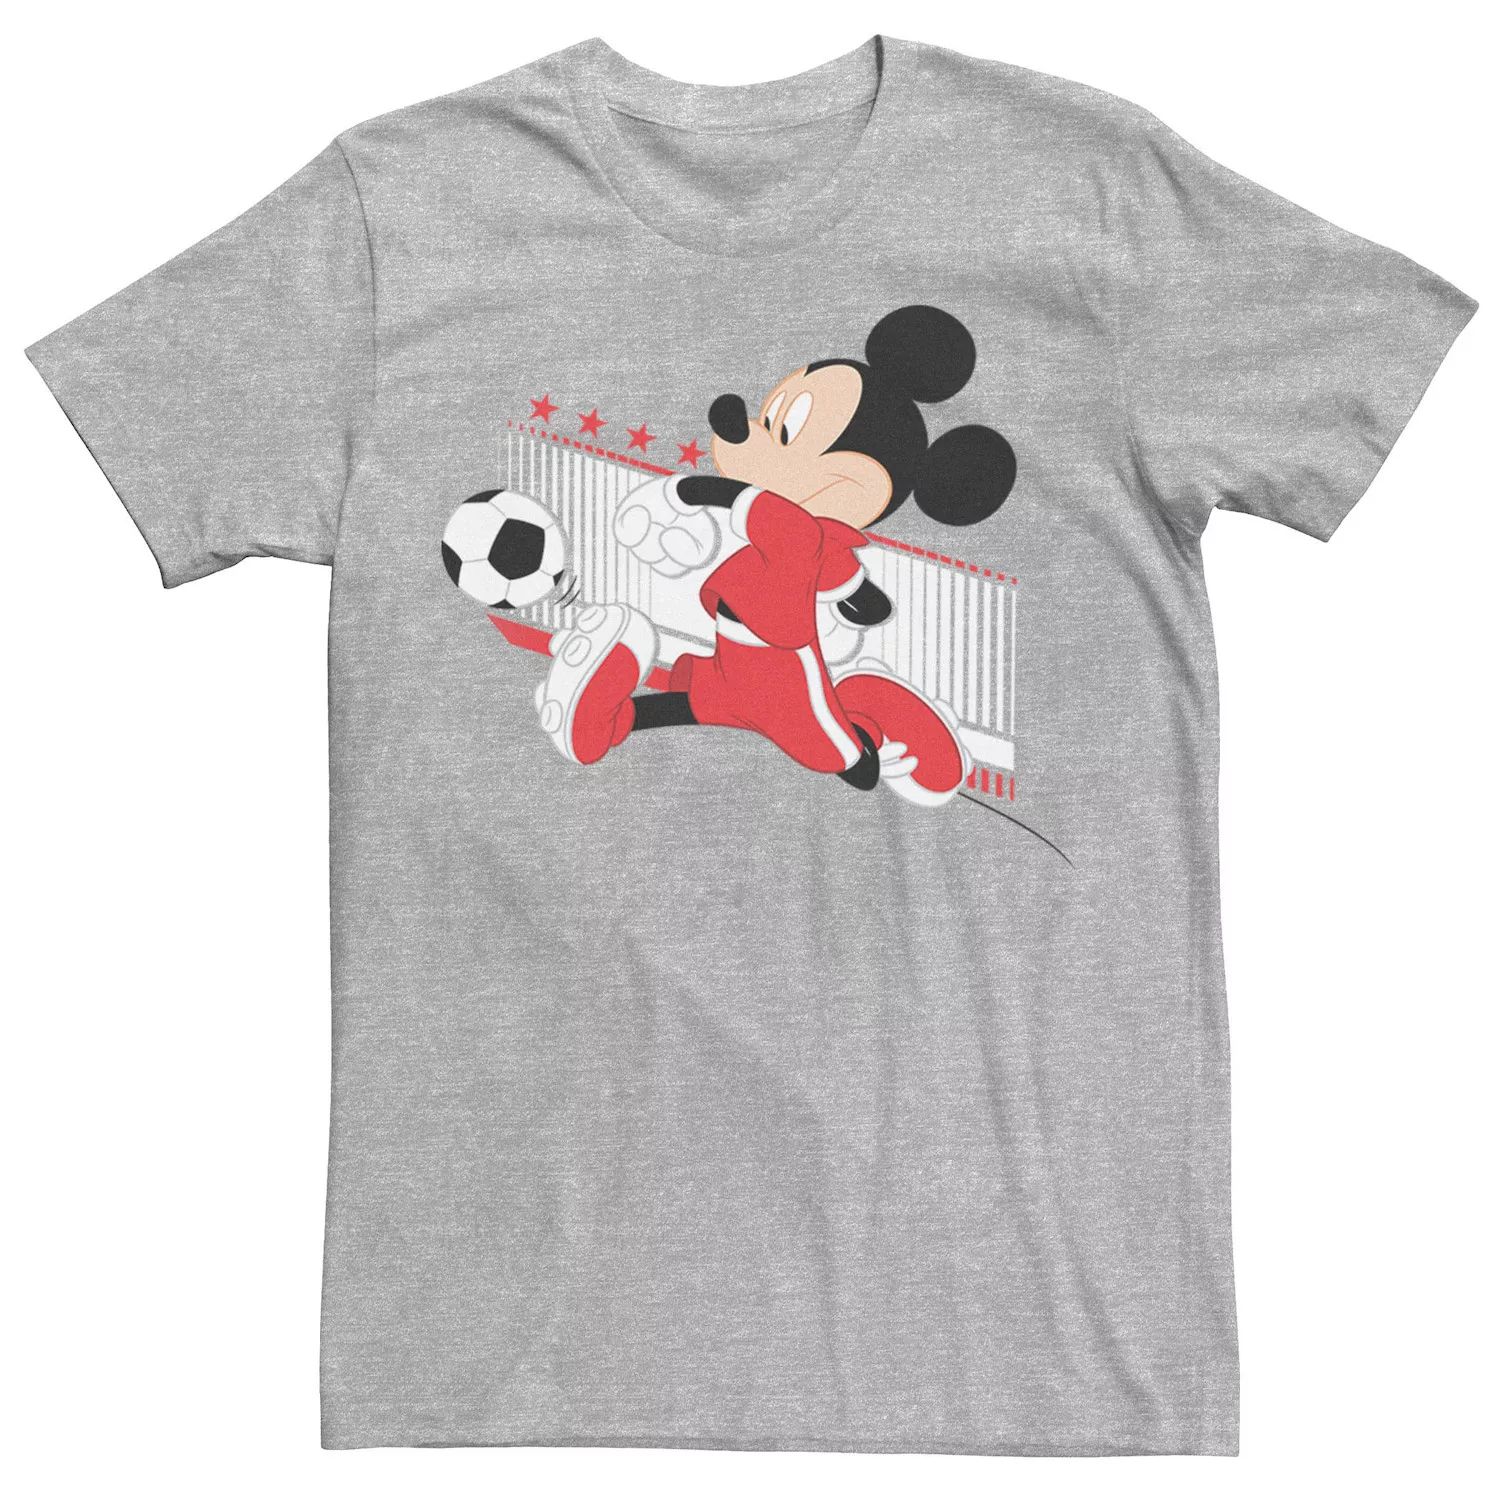 Мужская футболка с портретом в швейцарской футбольной форме с Микки Маусом Disney